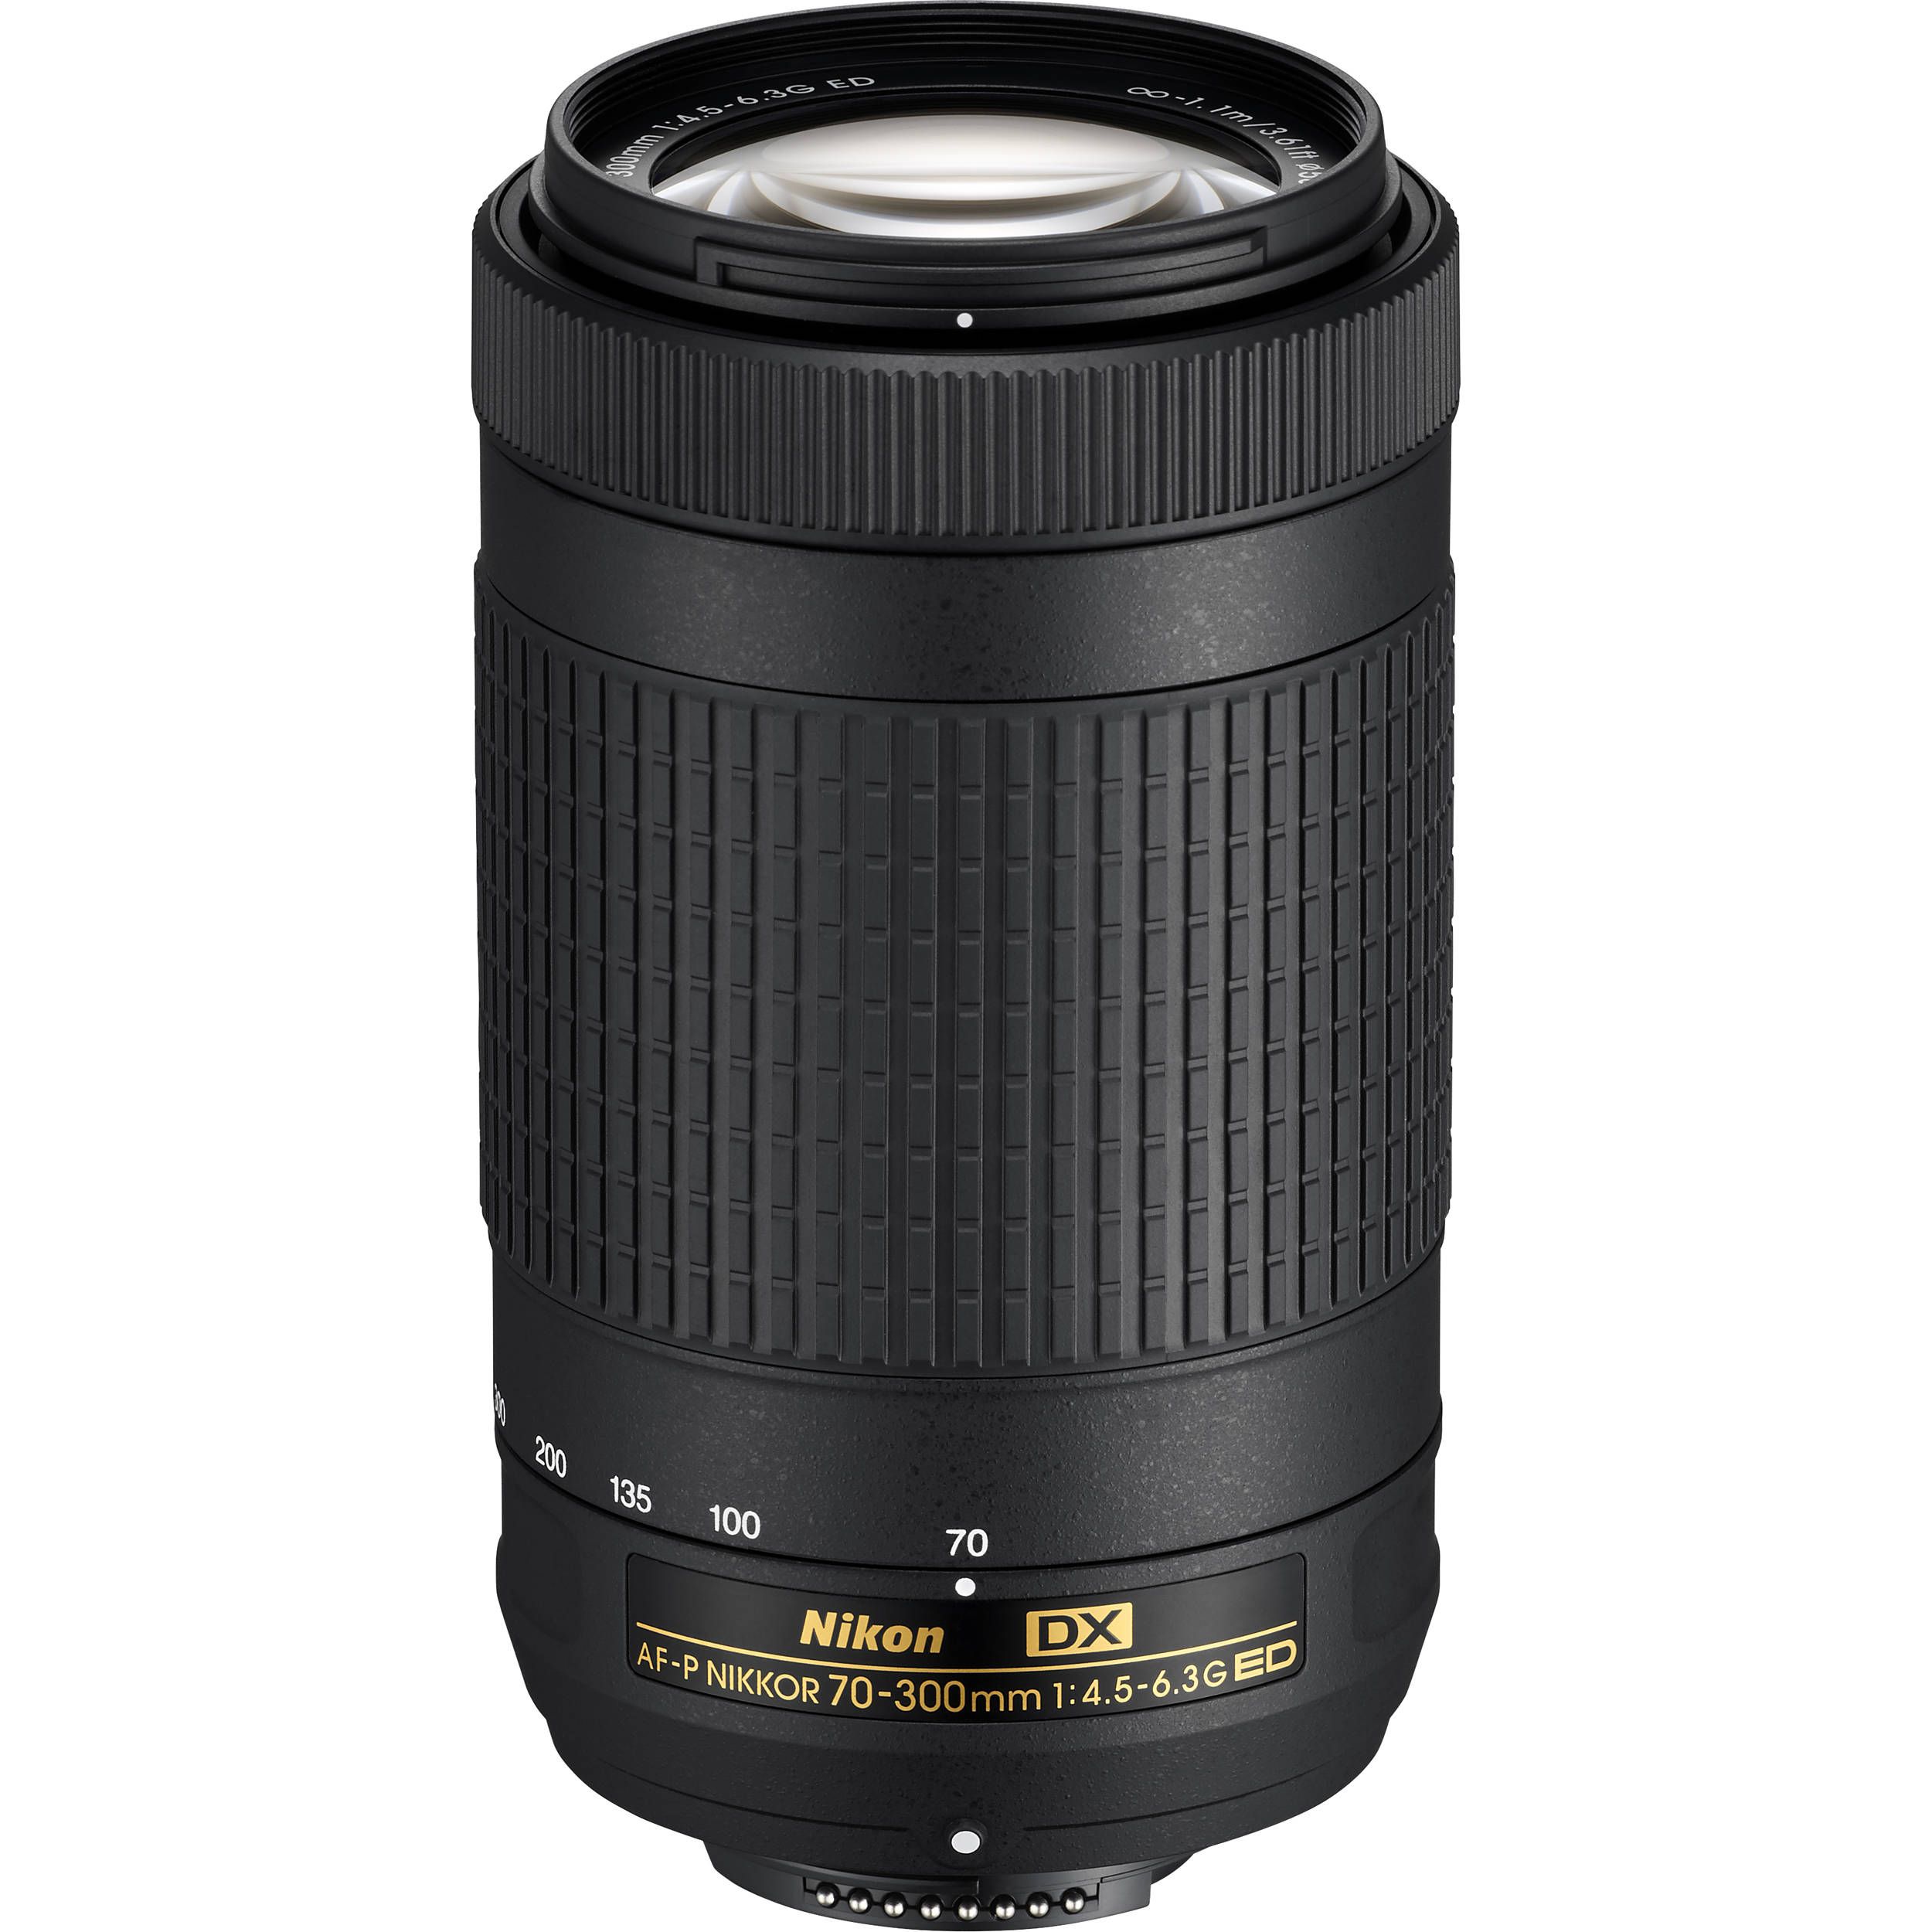 Nikon AF-P DX 70-300mm F/4.5-6.3G ED Lens